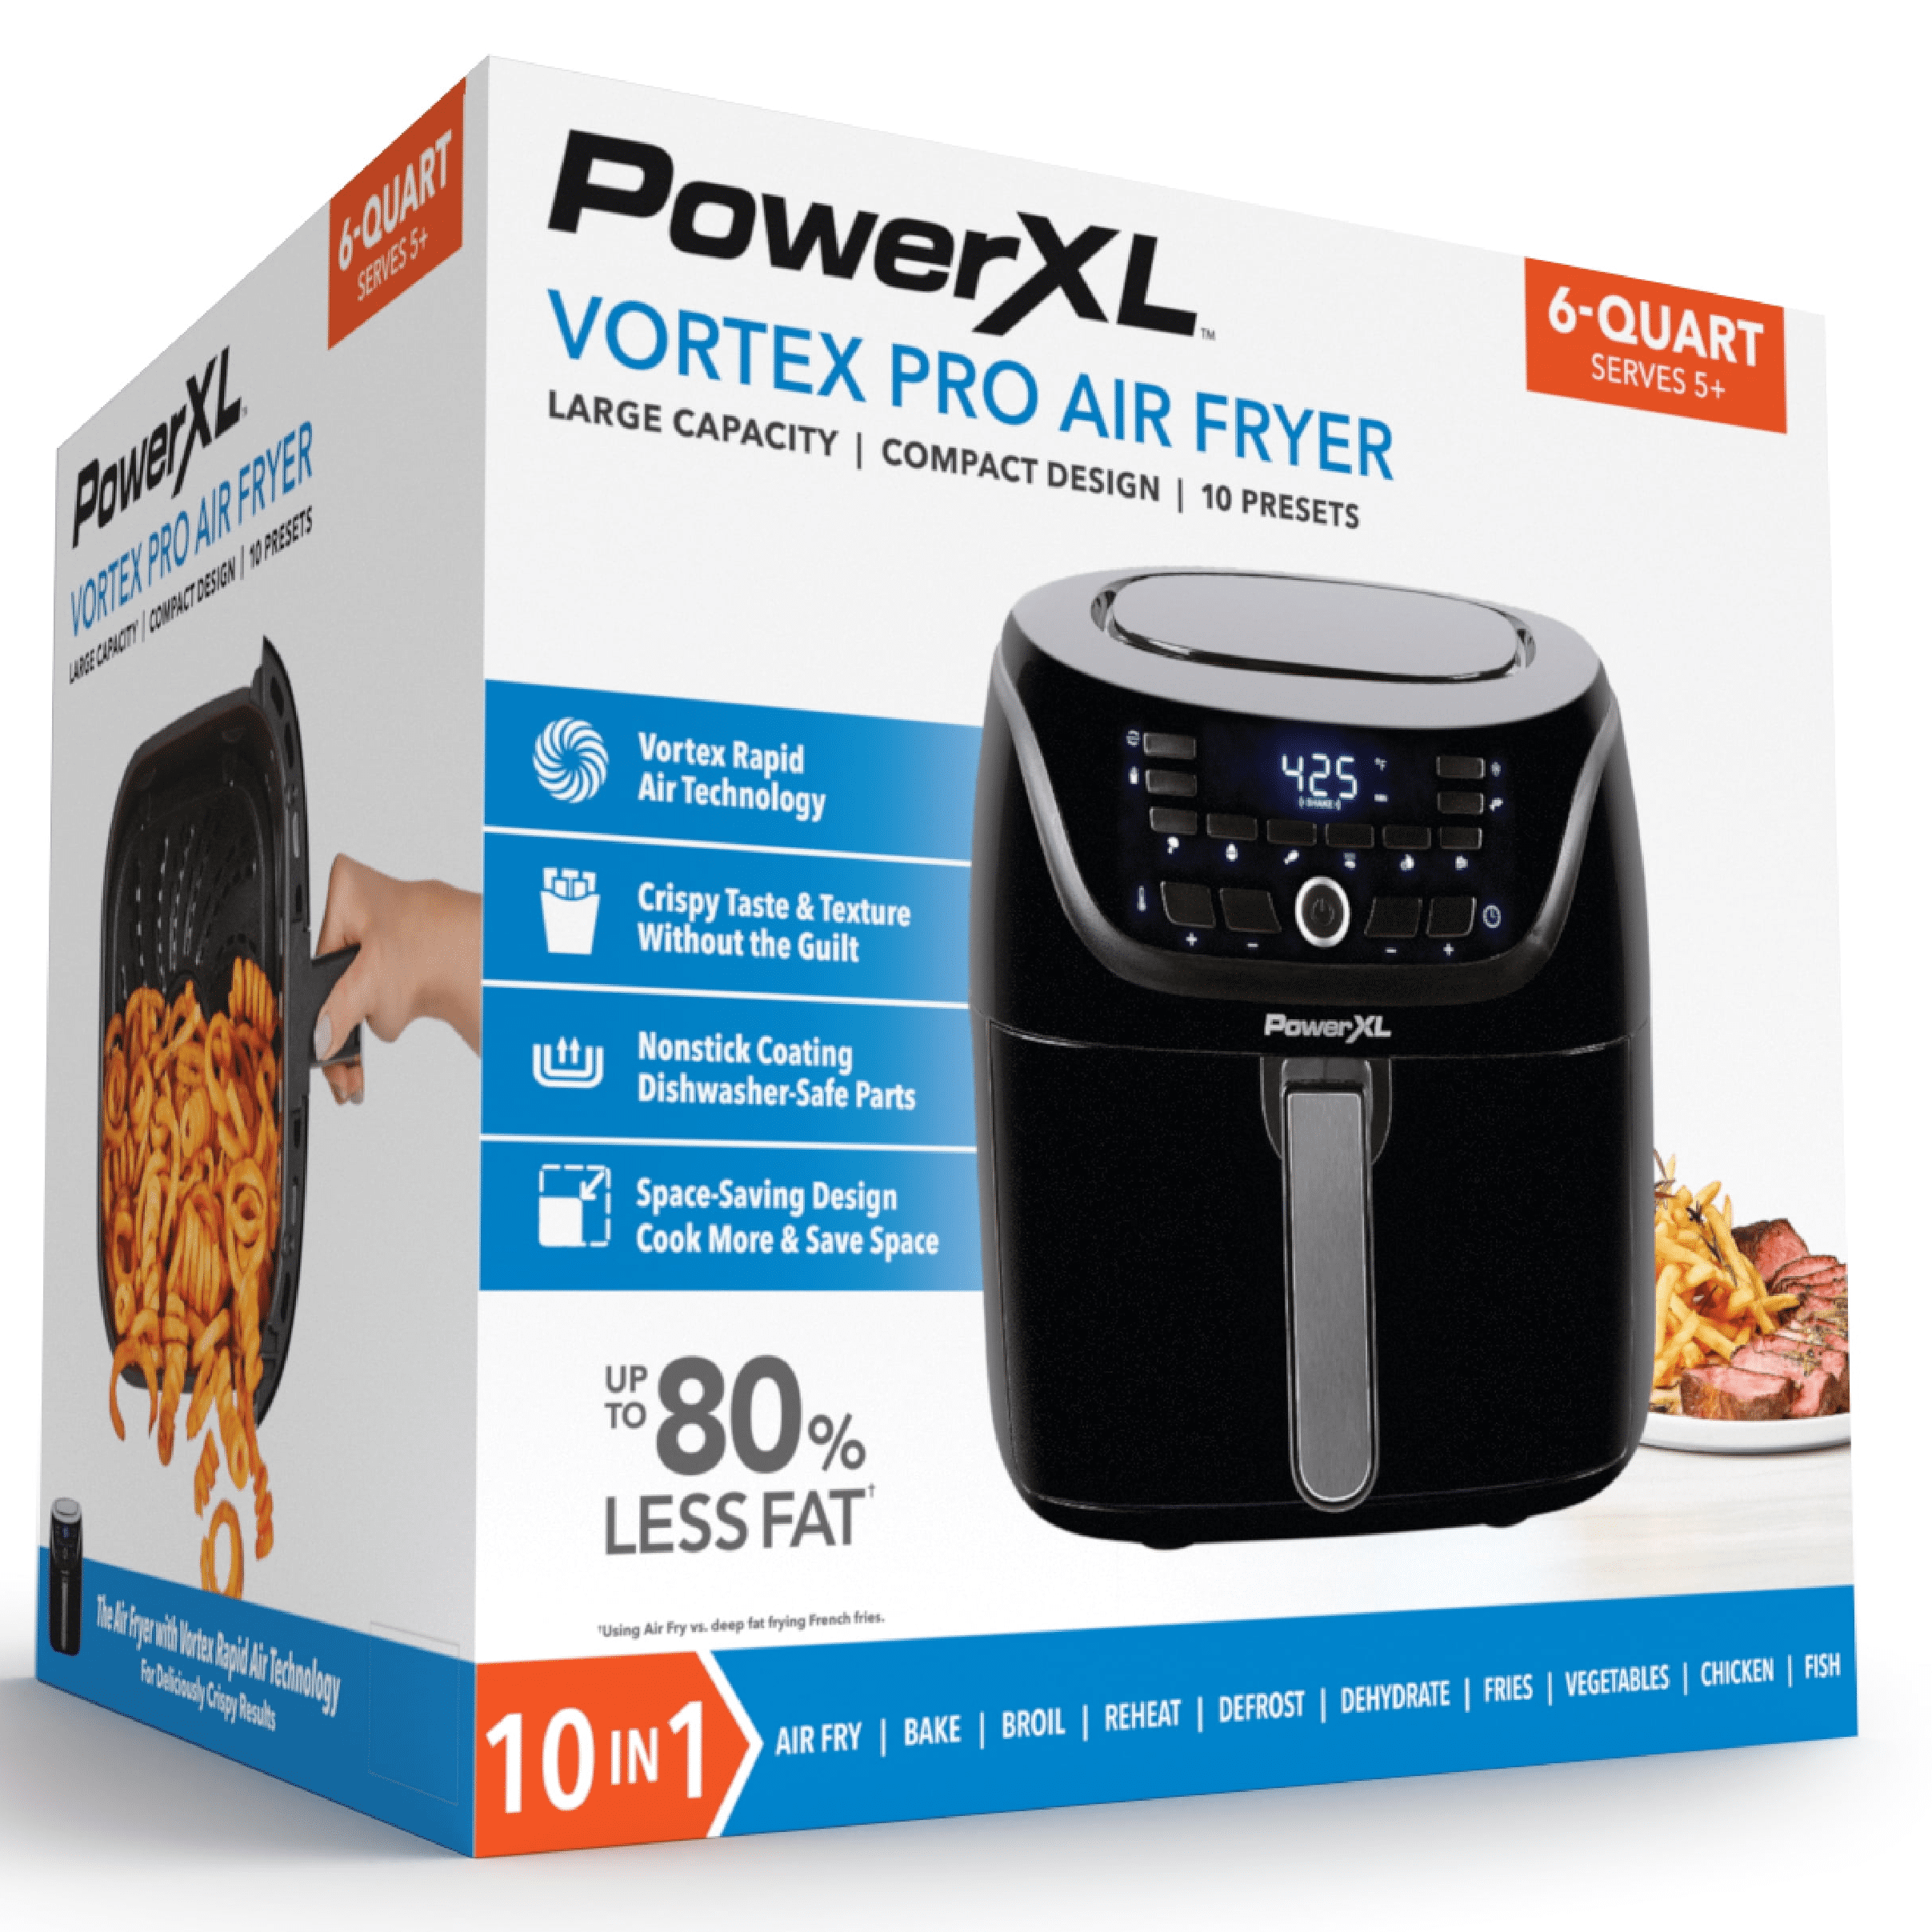 Power XL Vortex Air Fryers